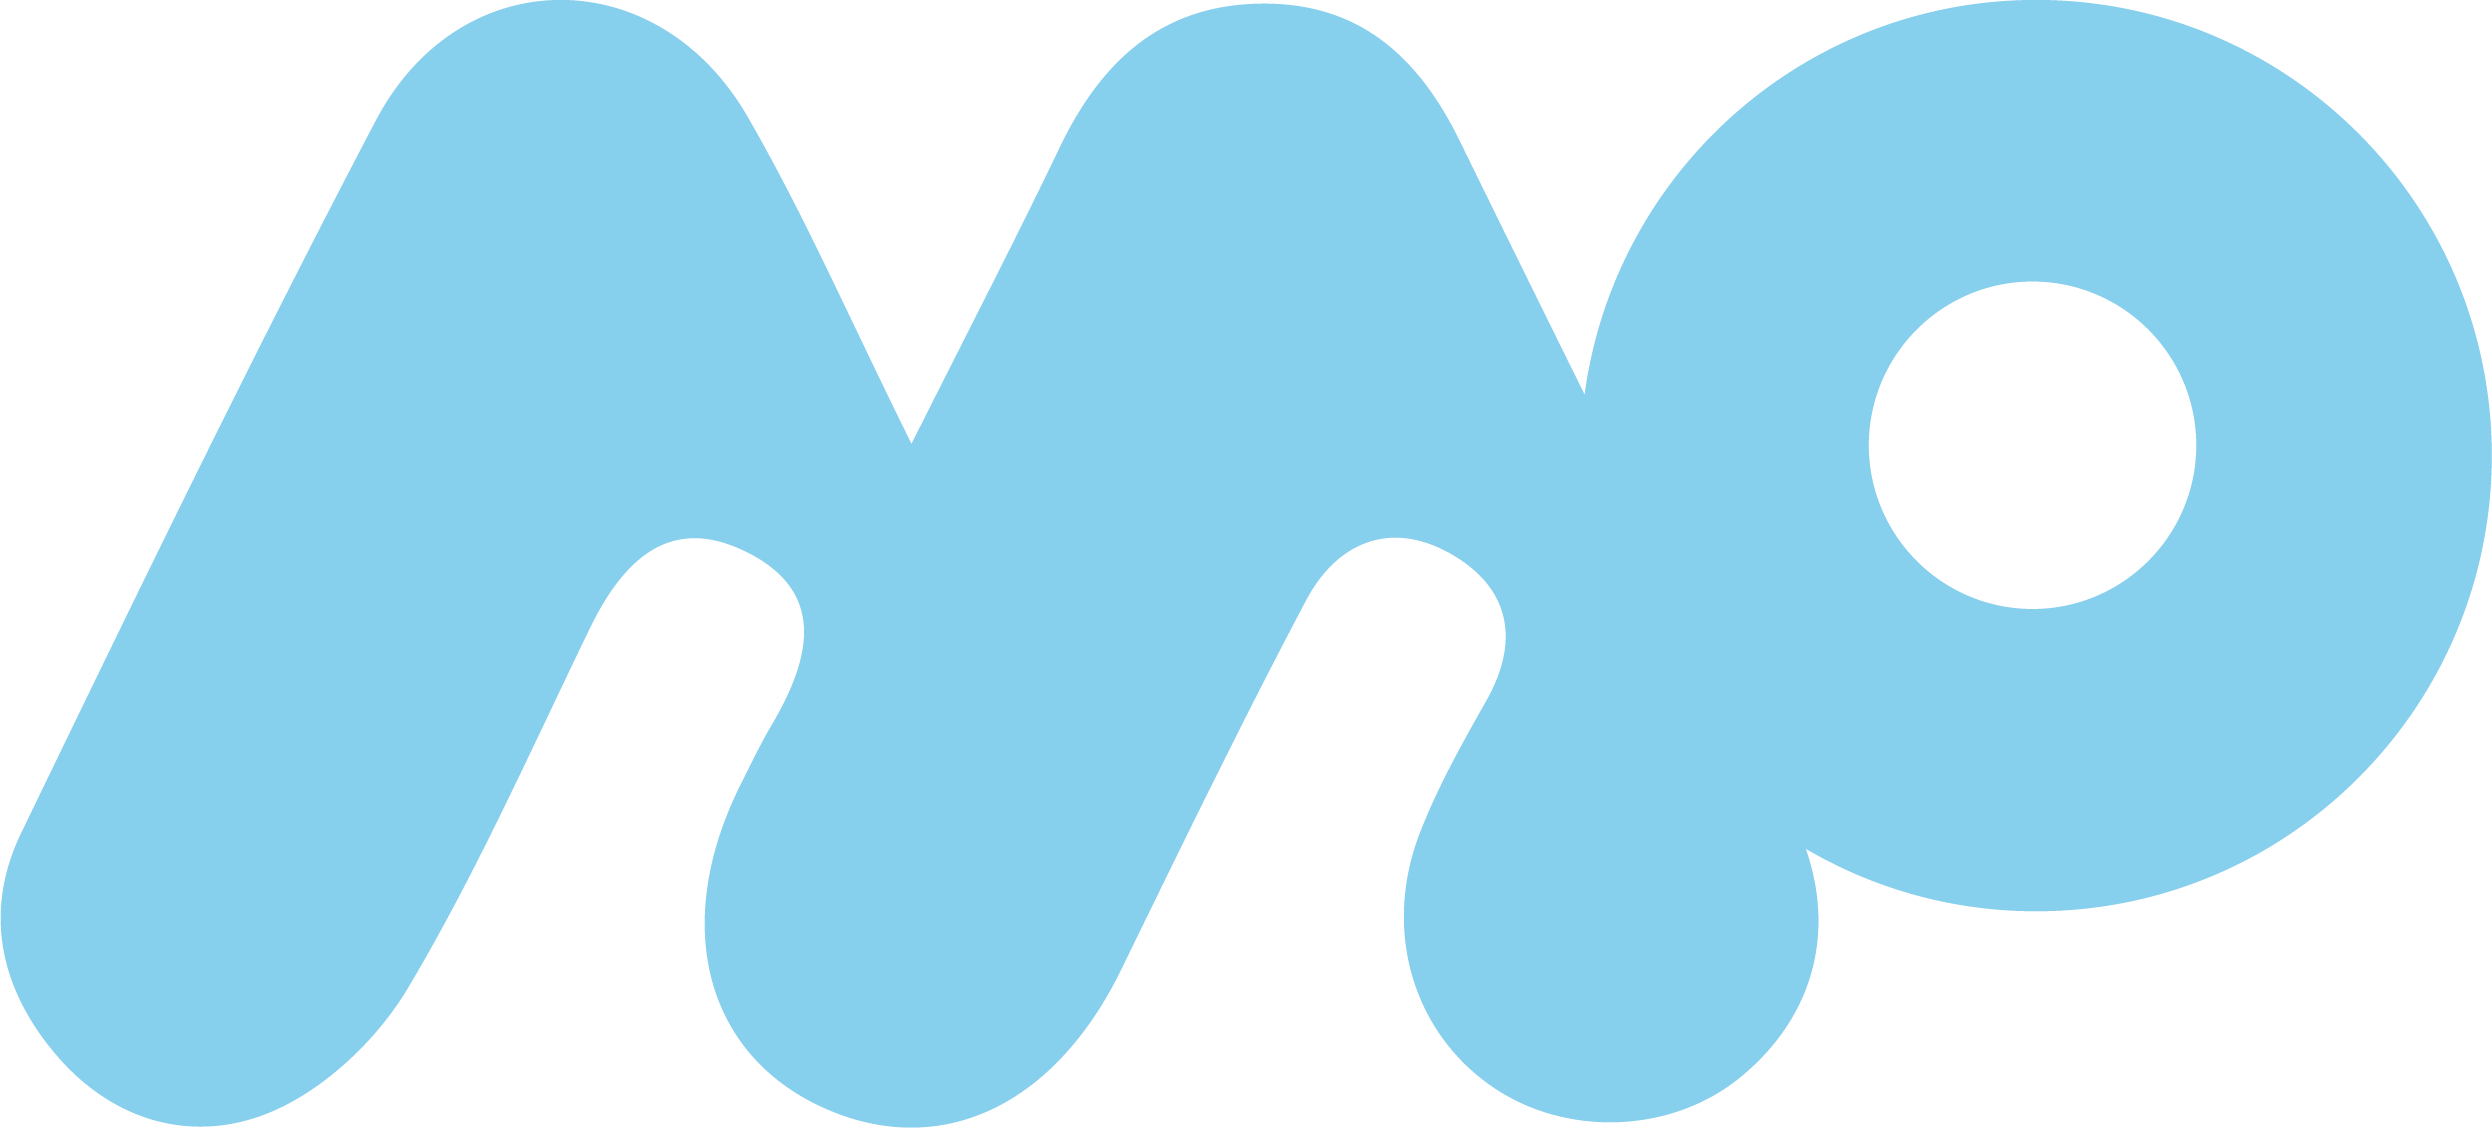 mpg_logo